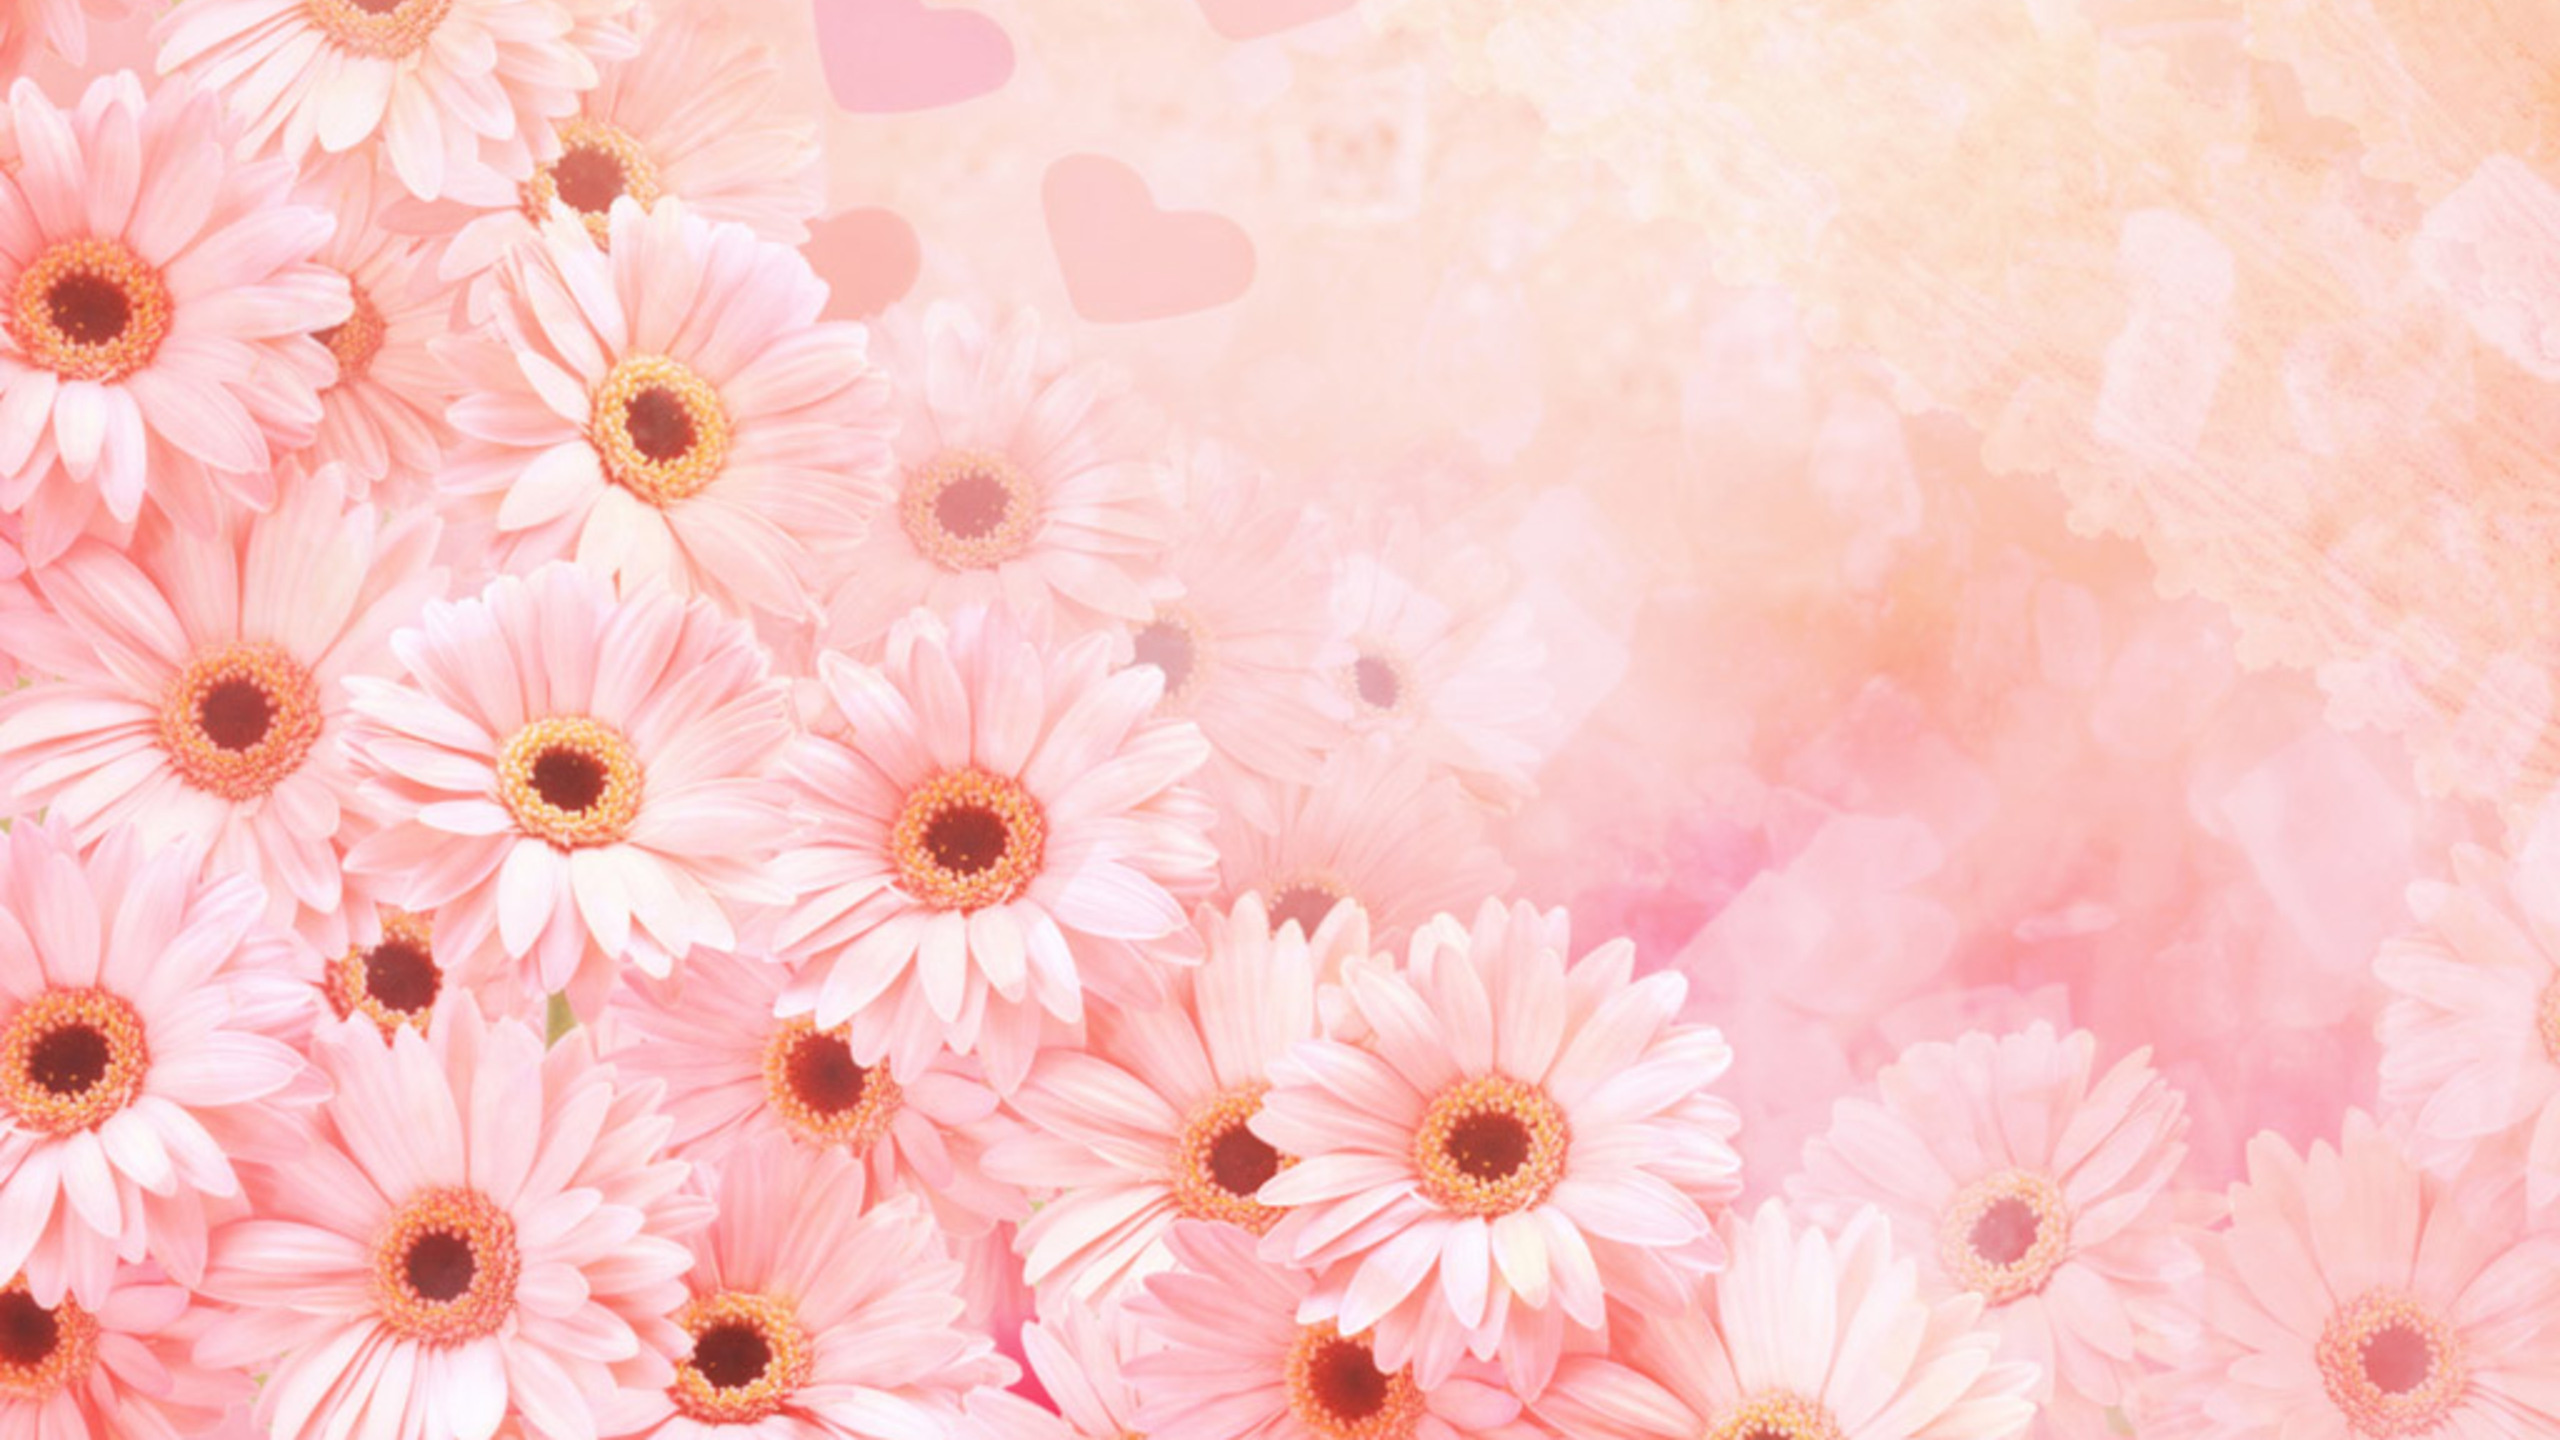 粉红色, 非洲菊, 花卉设计, 显花植物, 开花 壁纸 2560x1440 允许